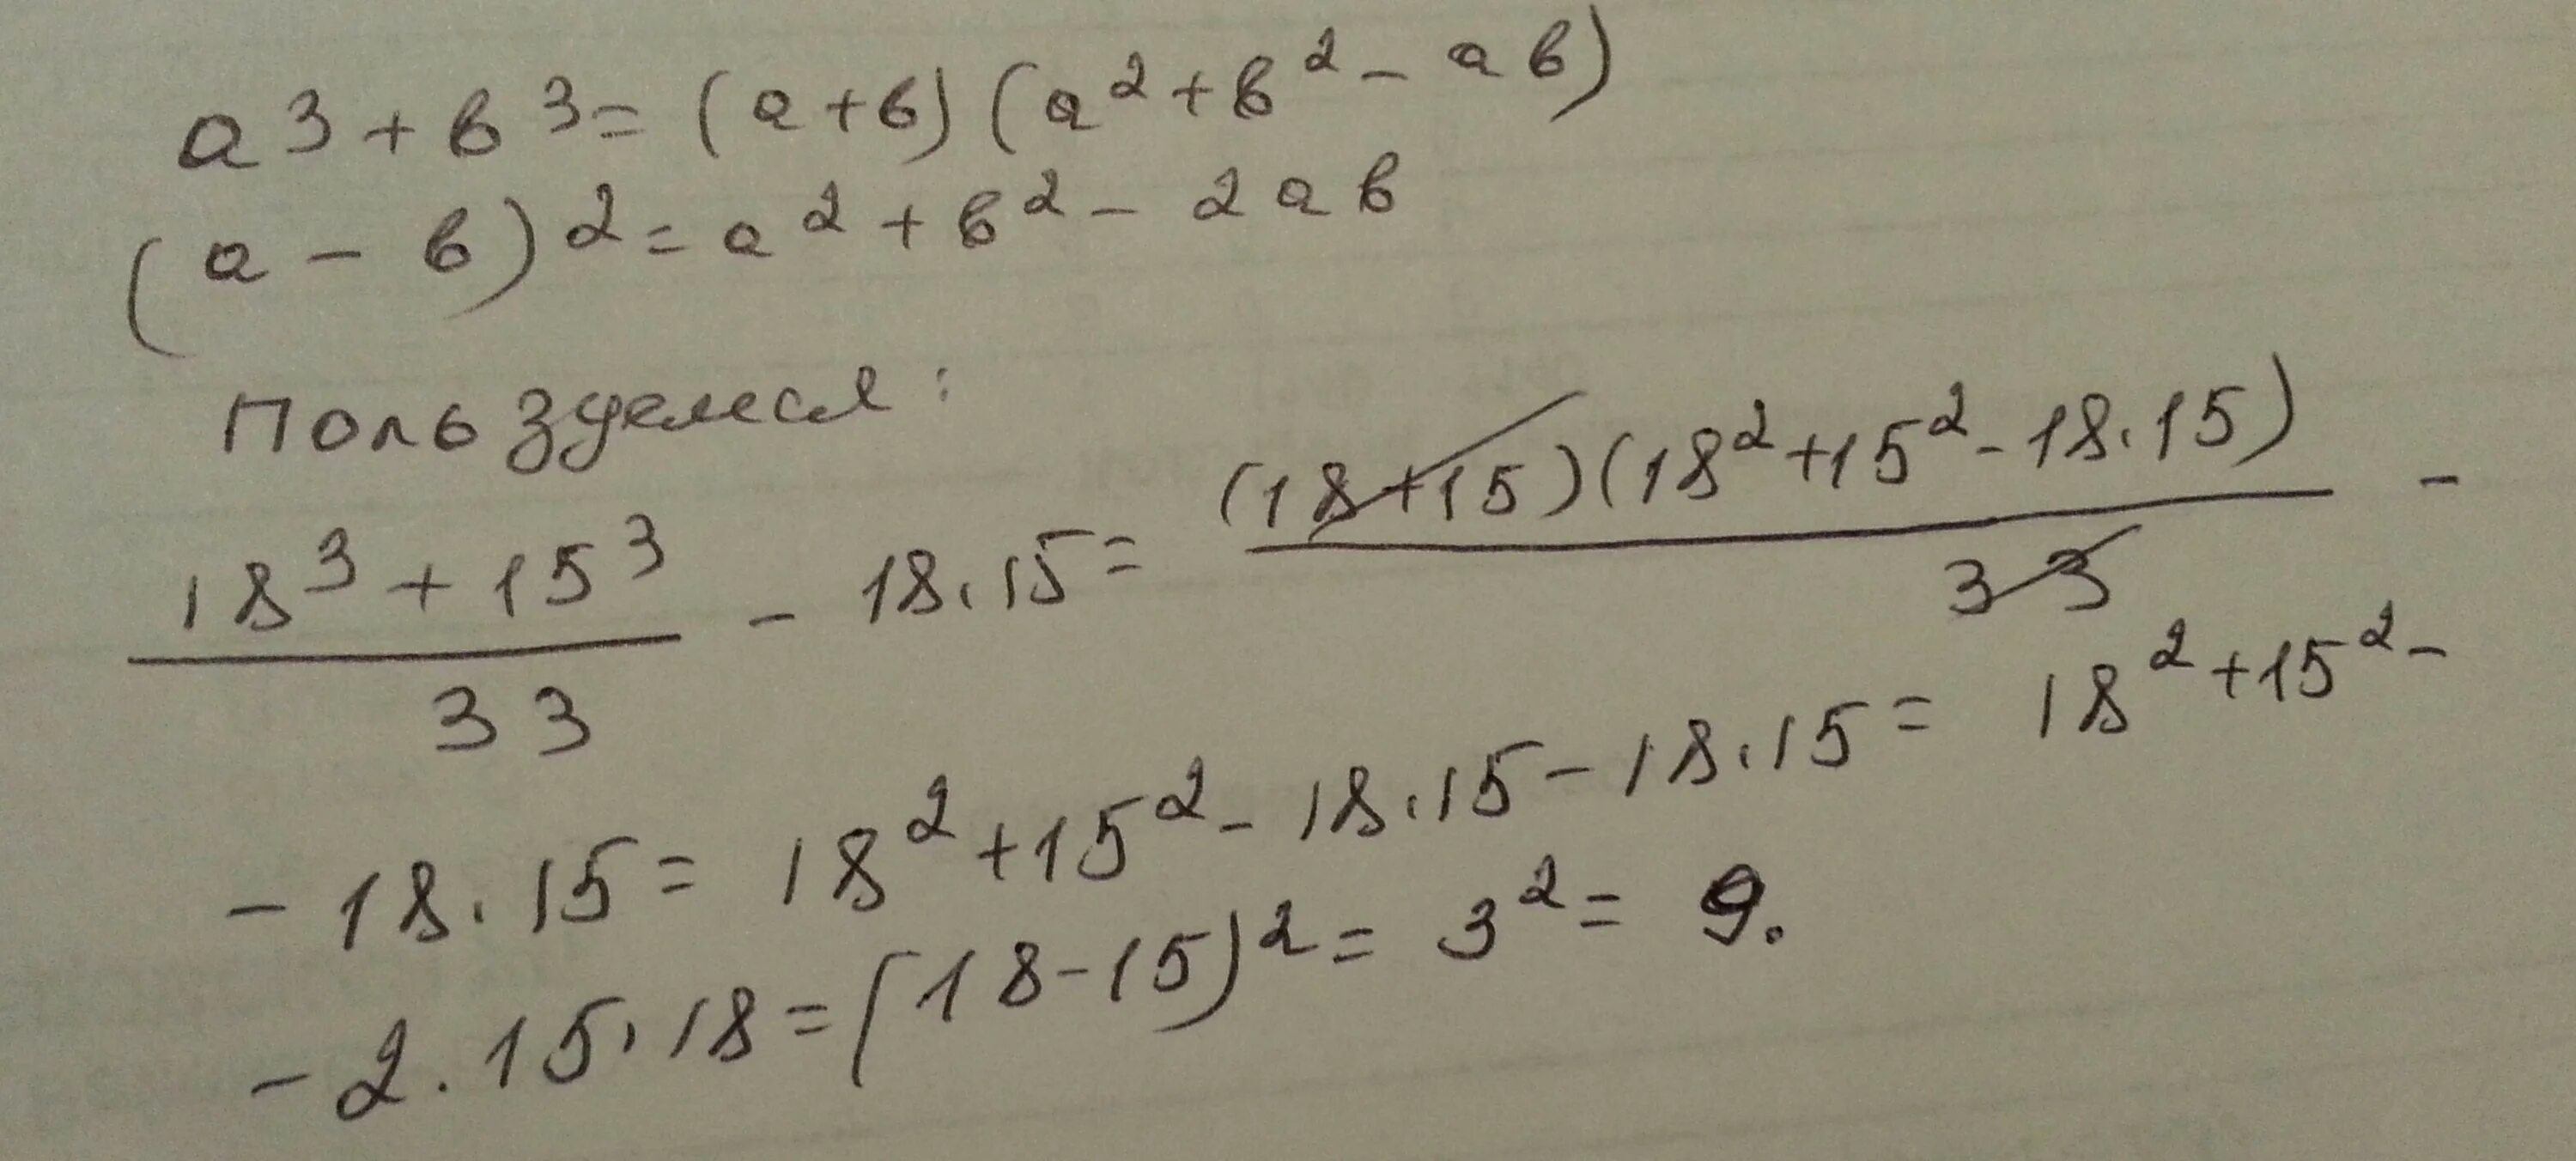 ^Вычислить наиболее рациональным способом 17^3+16^3/33 - 17*16. Вычислите наиболее рациональным способом 183^3 +62^3. Вычислить наиболее рациональным способом 153 во 2 + 153. Вычислите более рациональным способом 47×15+53×15. 18 пятнадцать